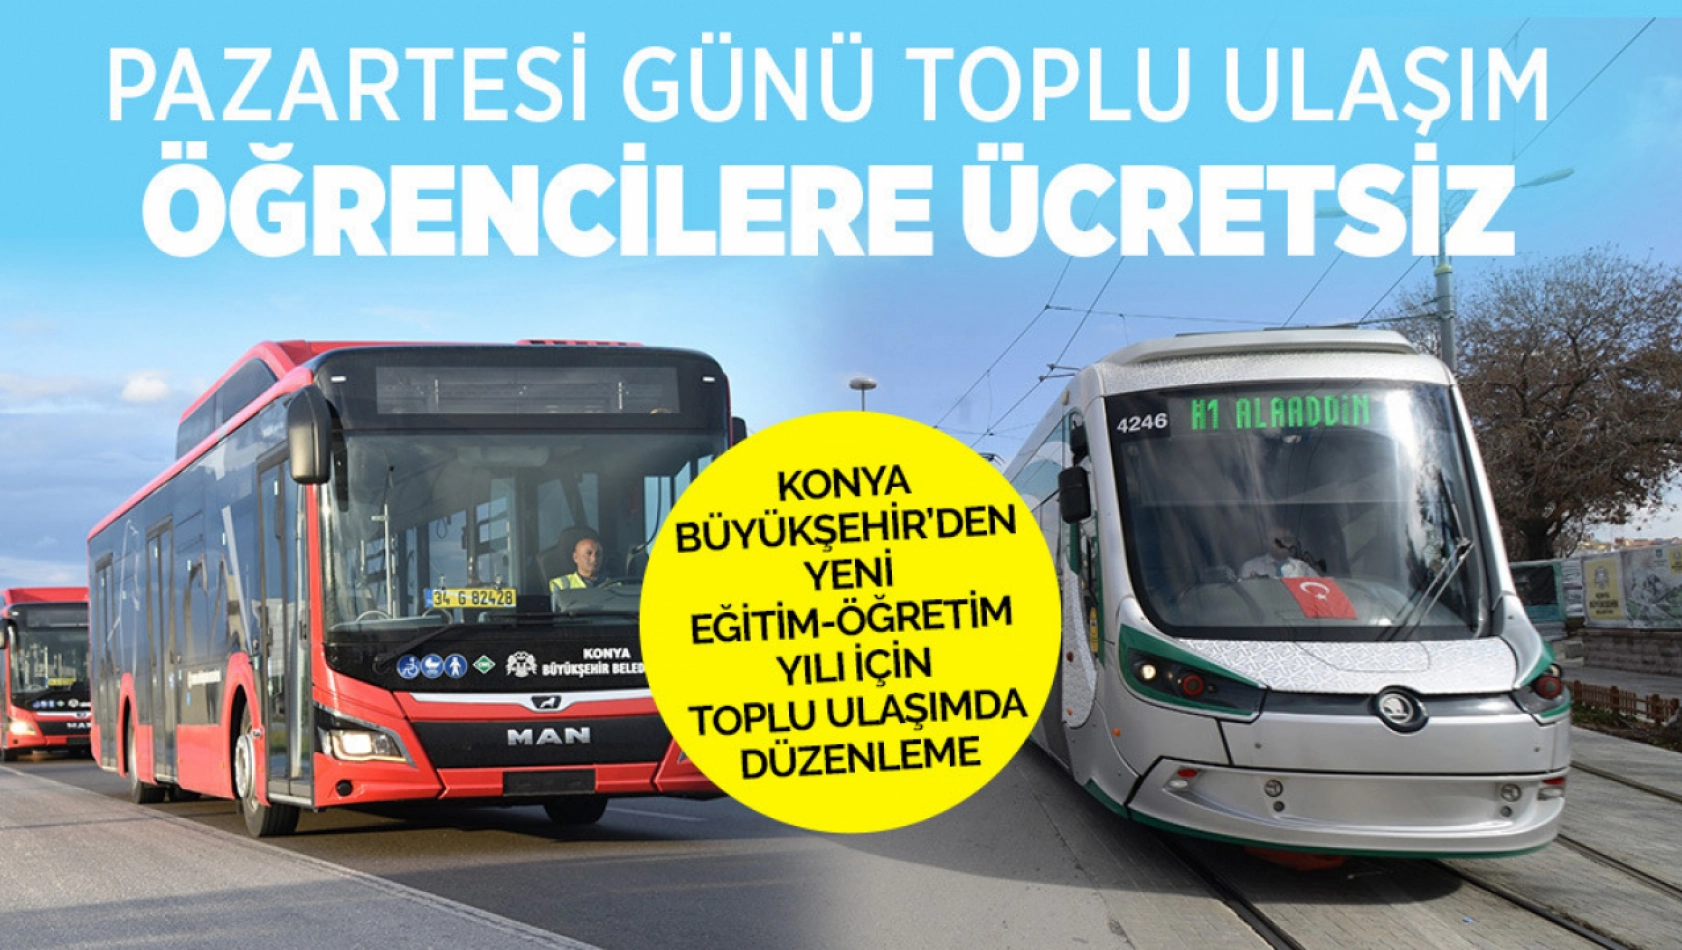 Konya Büyükşehir Belediyesi Açıkladı:  11 Eylül Pazartesi günü toplu ulaşım ücretsiz!